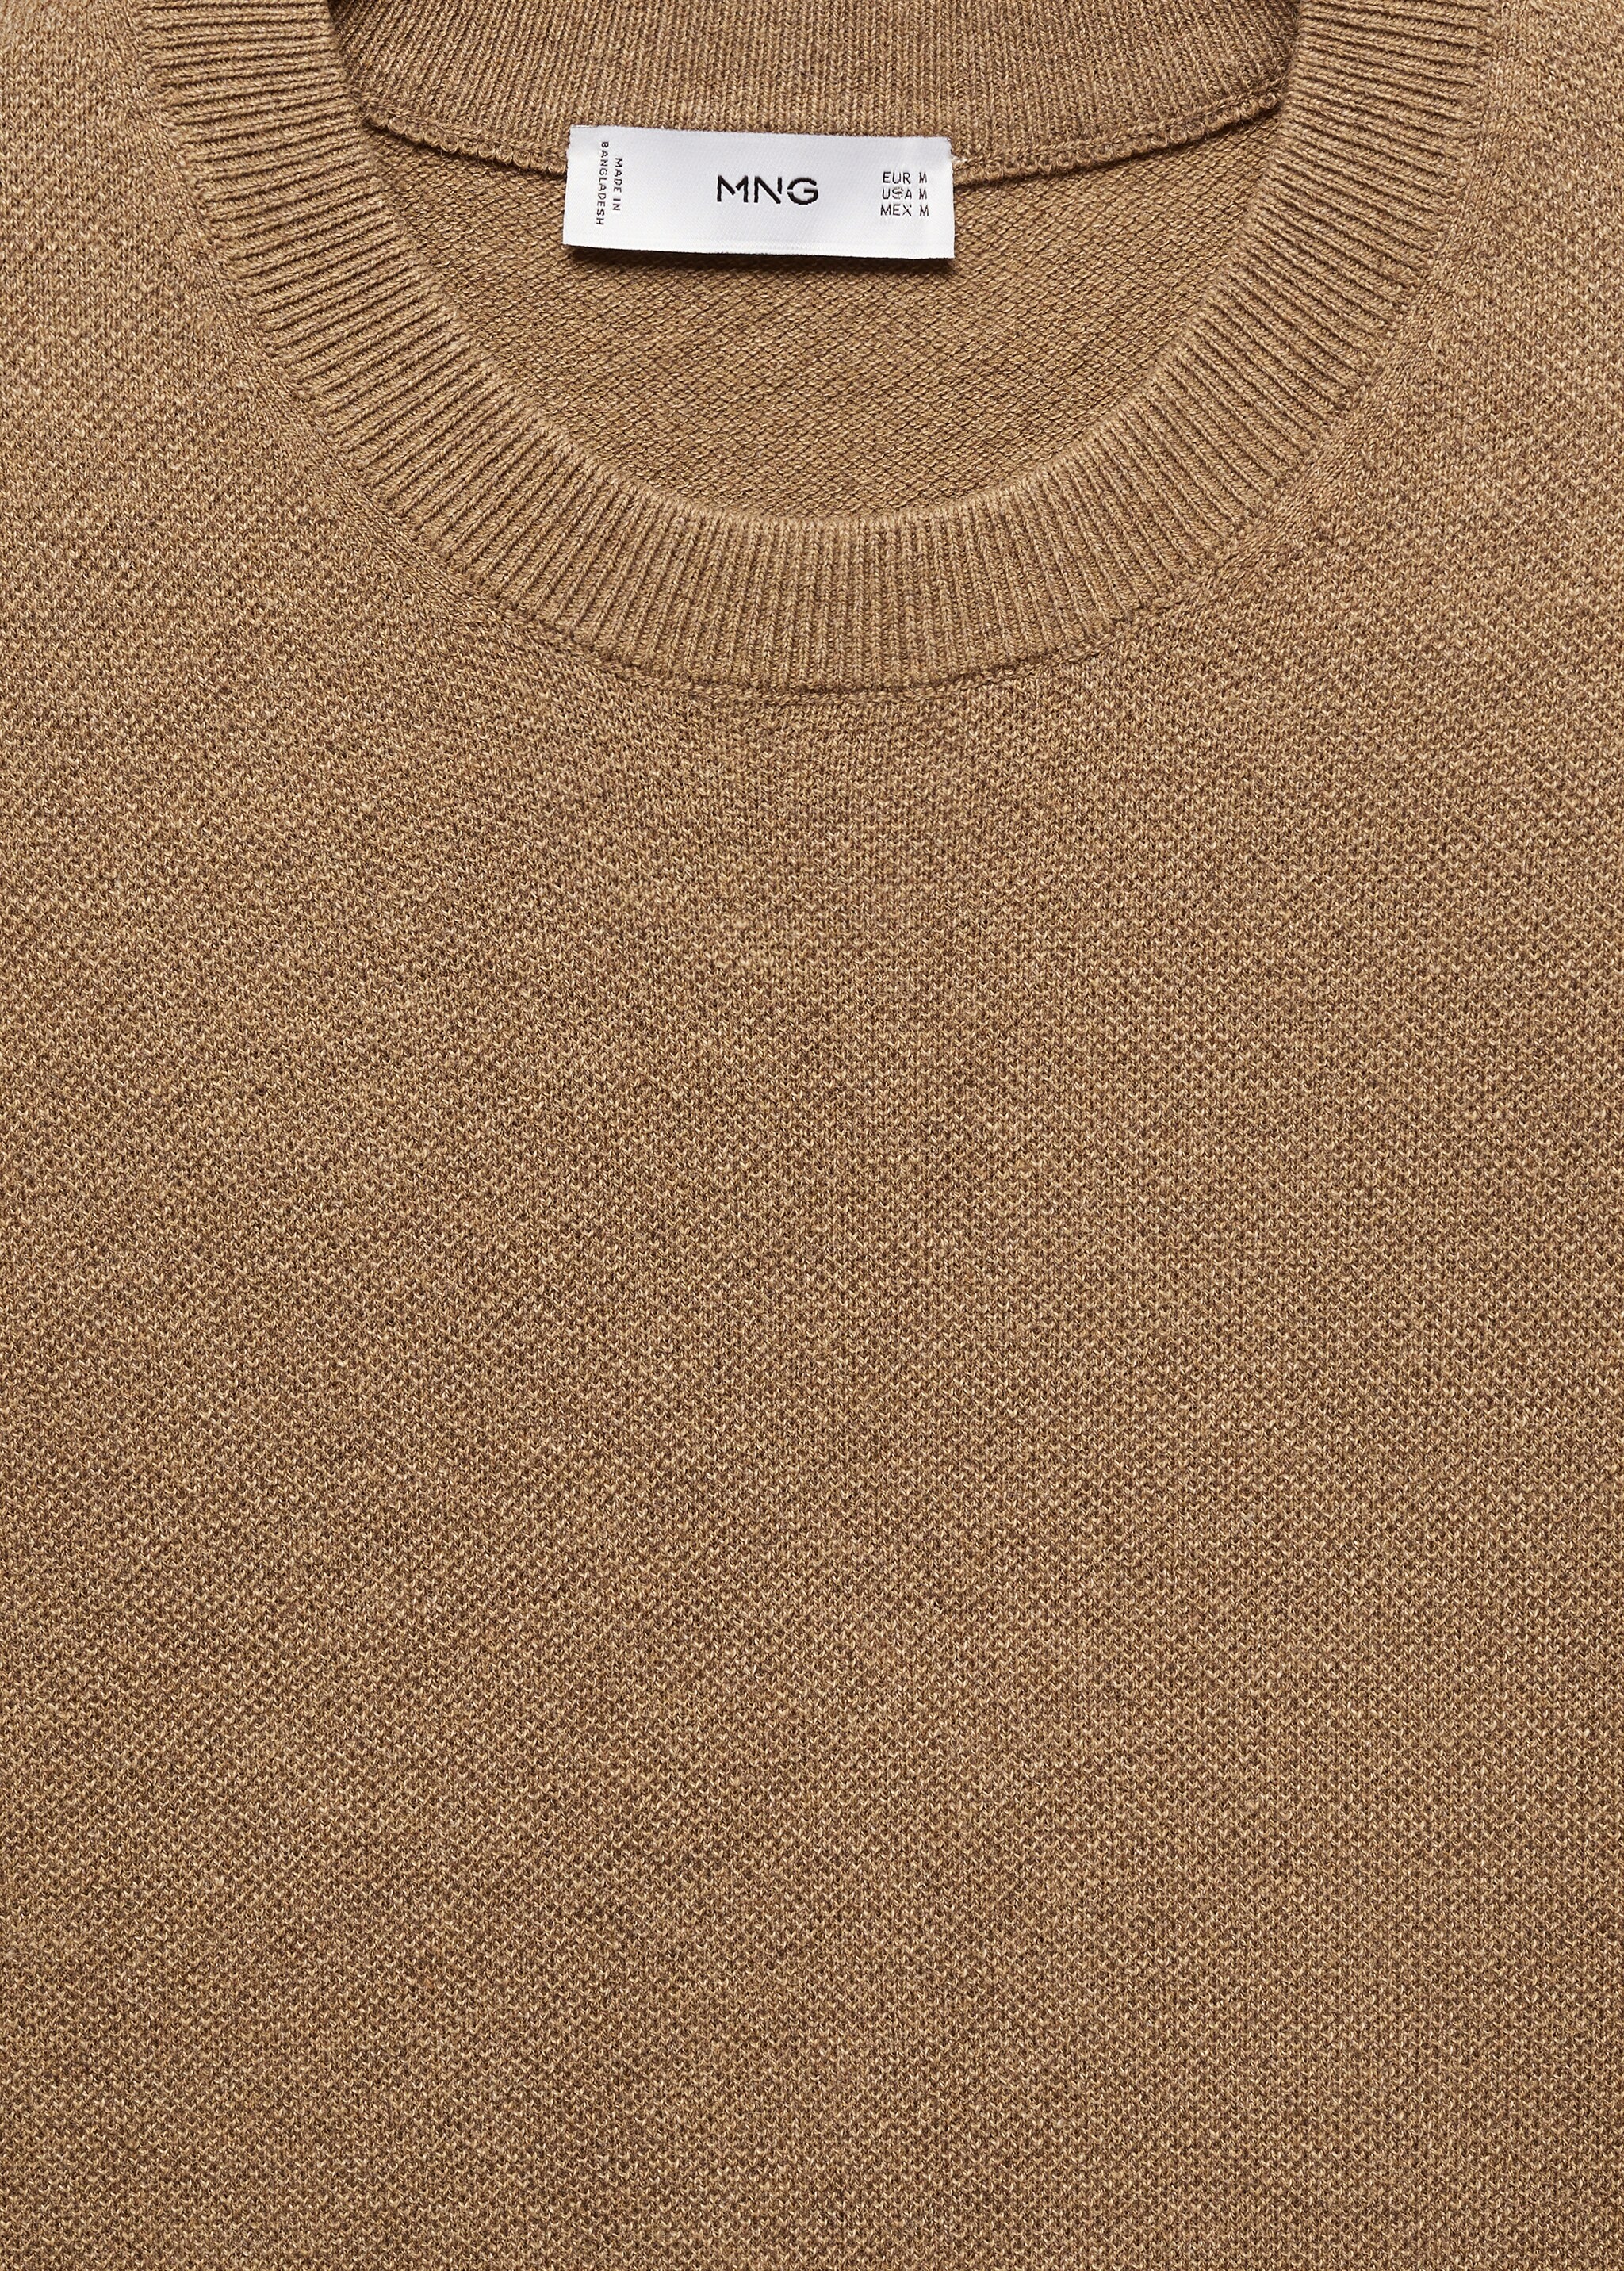 T-shirt maille coton structuré - Détail de l'article 8